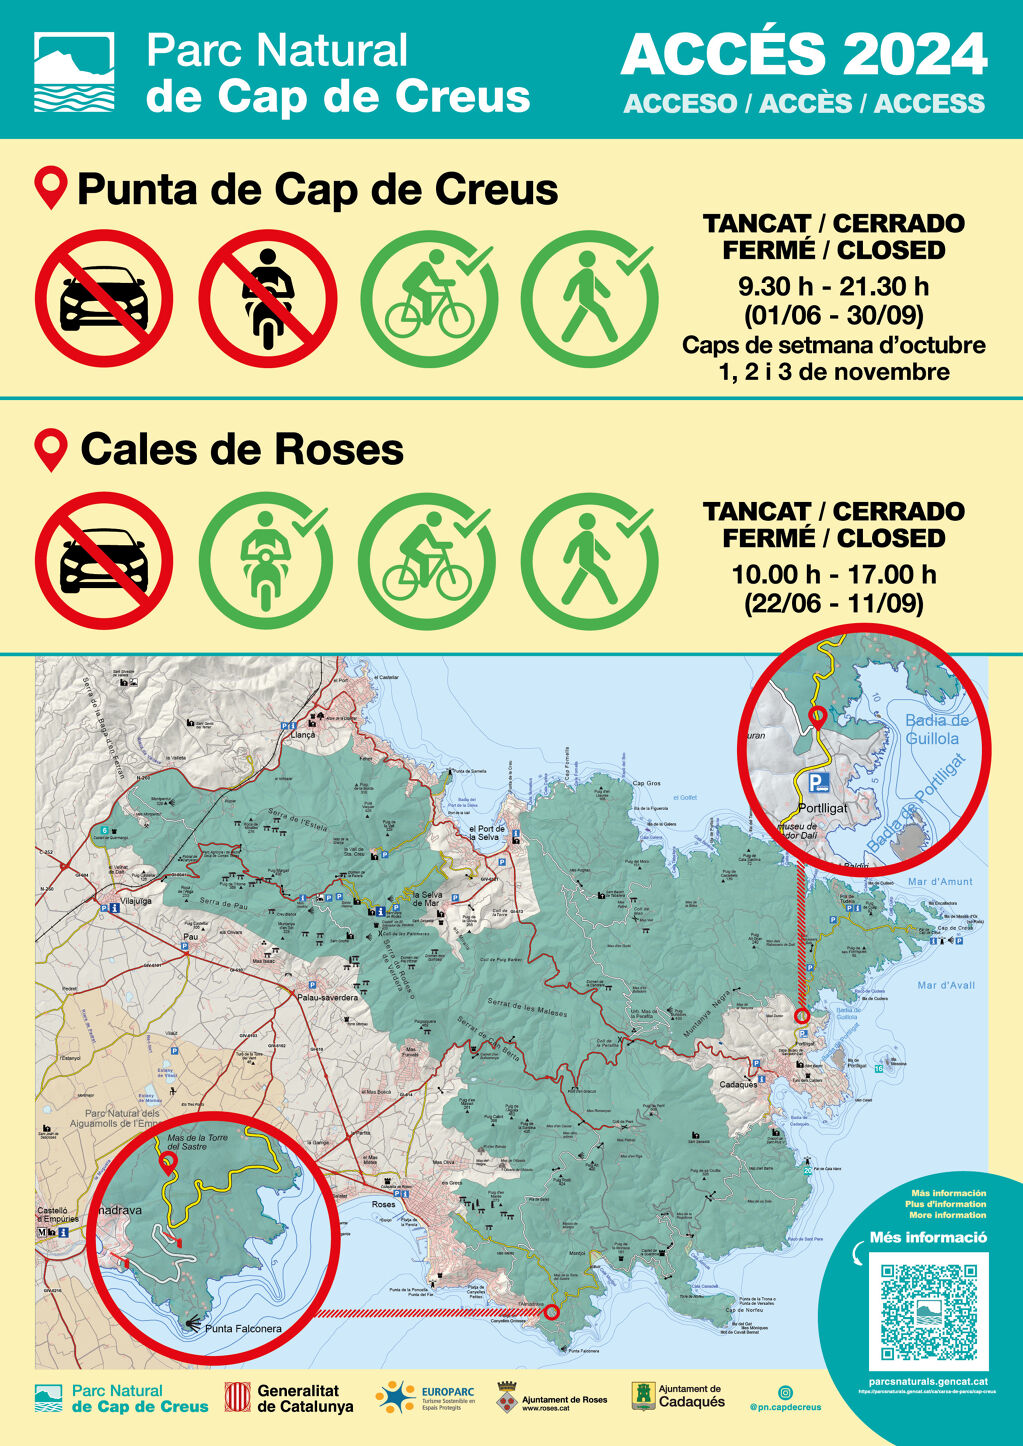 Accès des véhicules au Parc National du Cap de Creus depuis Roses, fermé du 22 juin au 11 septembre